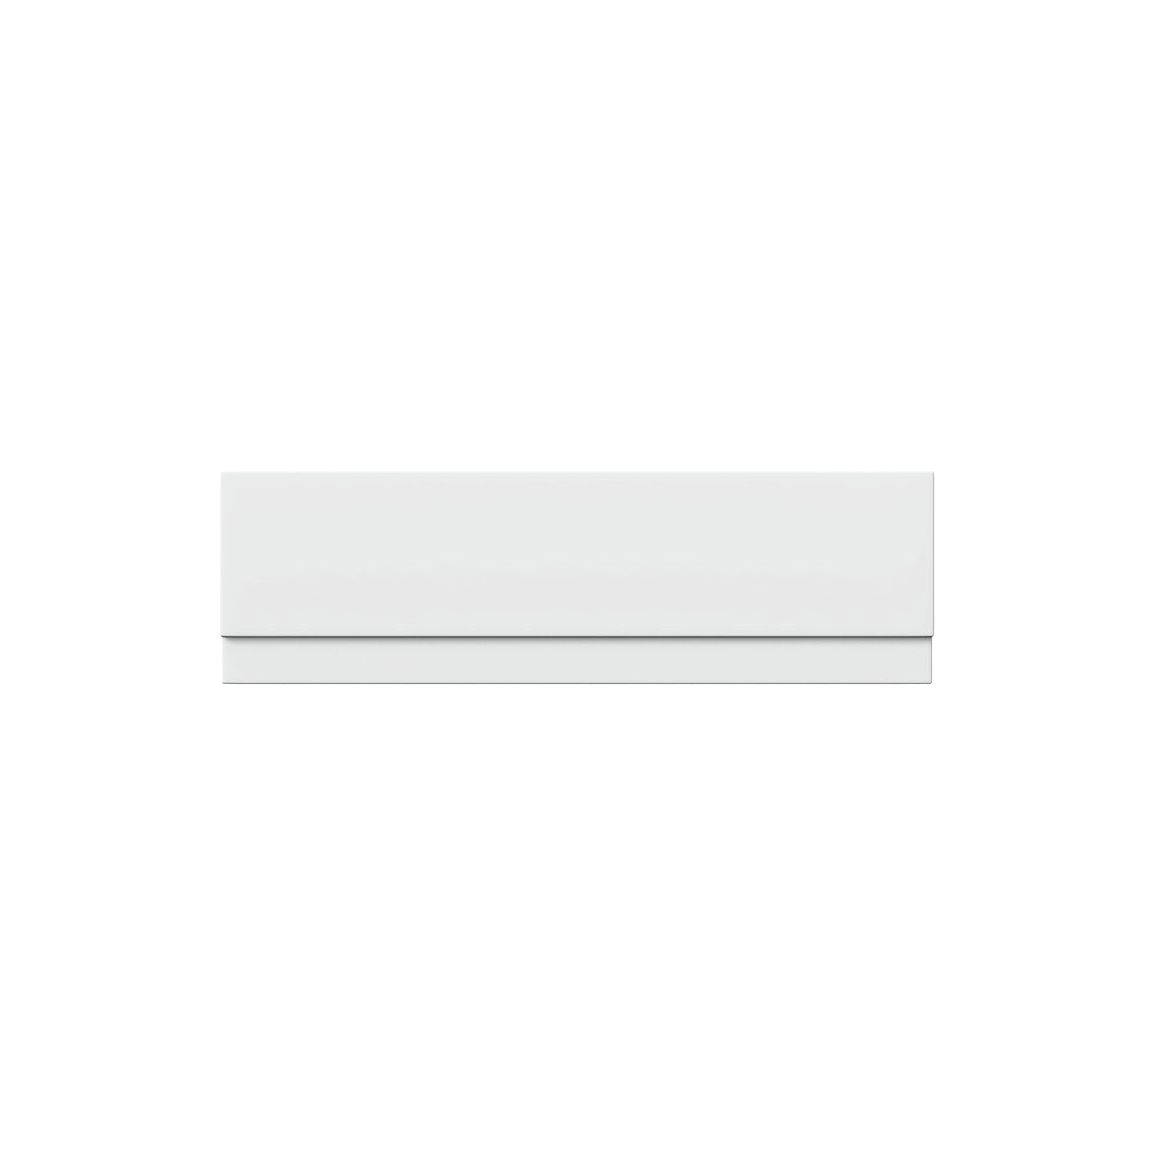 Egerton 1500mm Front Panel - White